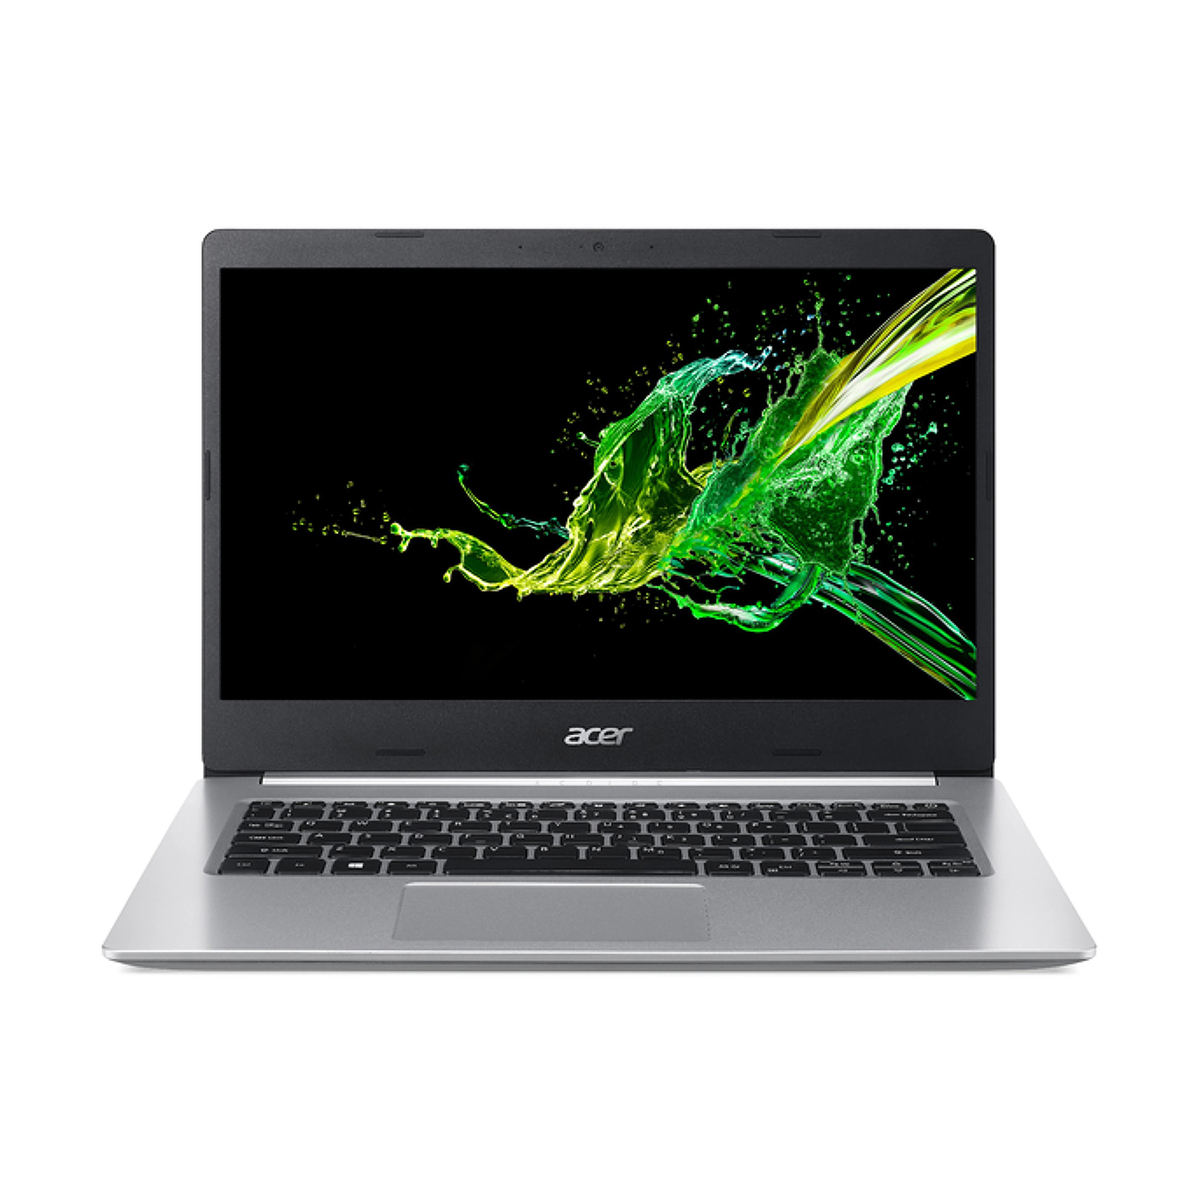 Acer Aspire A514-NXHZ5EM004,Intel Core i7,8GB RAM,1TB SSD,2GB MX 350 VGA,14"FHD,Windows 10,Silver